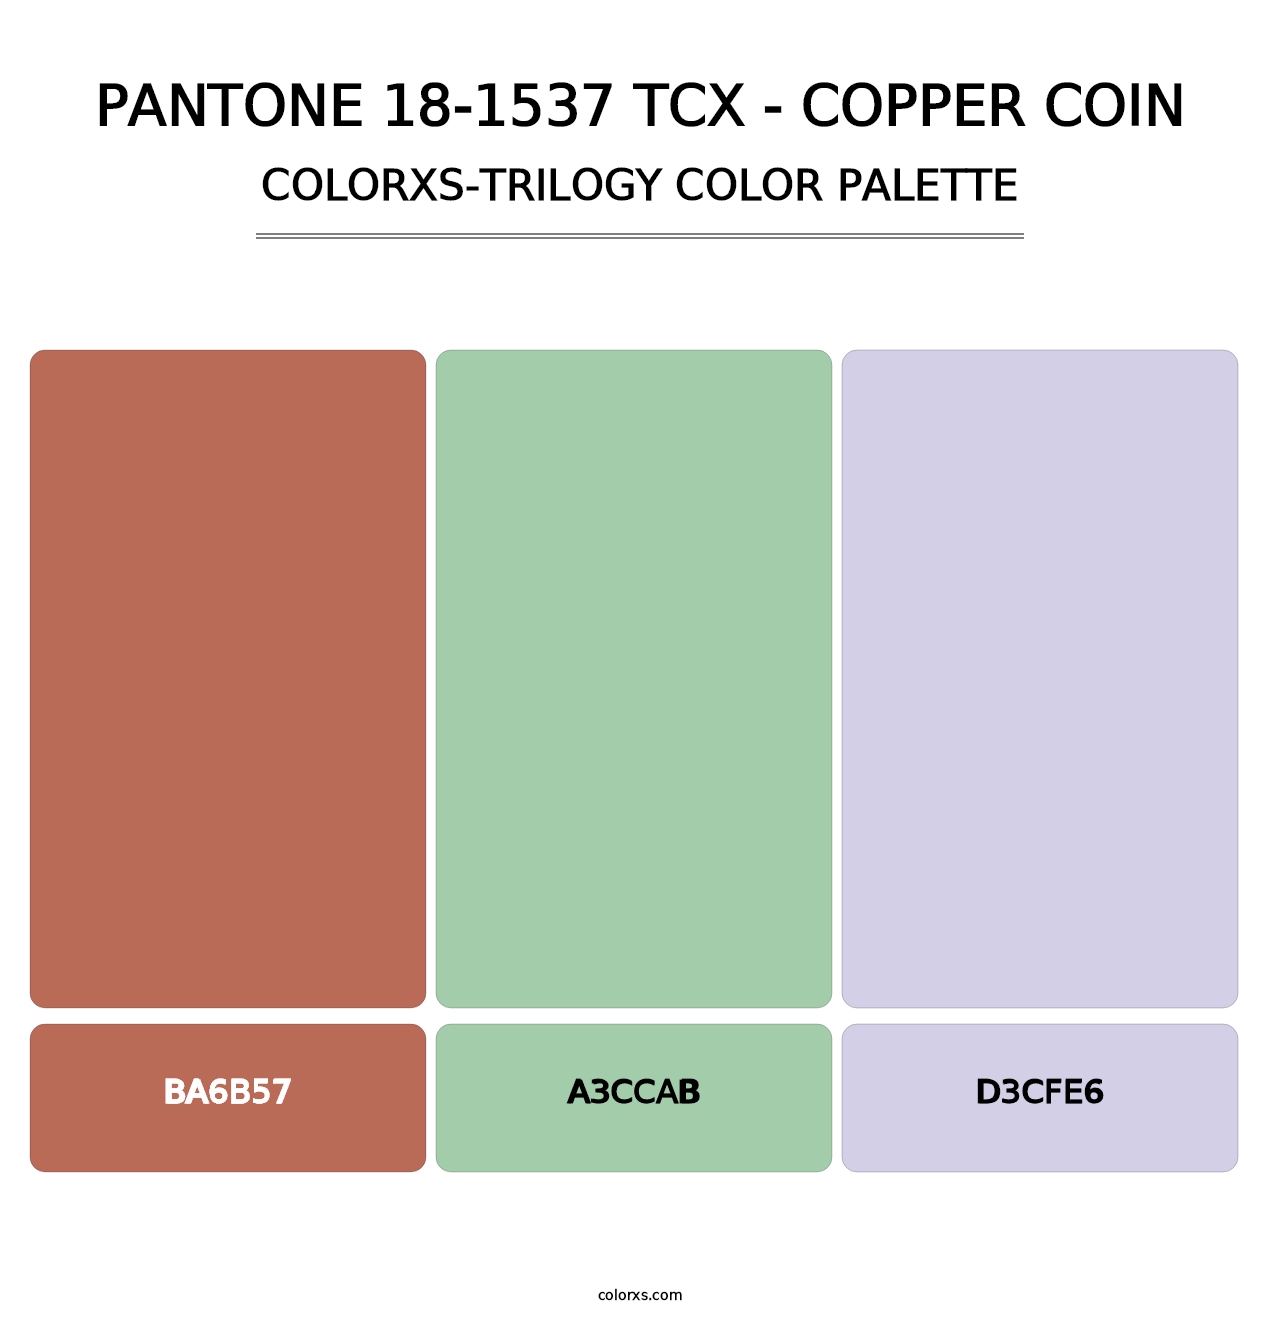 PANTONE 18-1537 TCX - Copper Coin - Colorxs Trilogy Palette